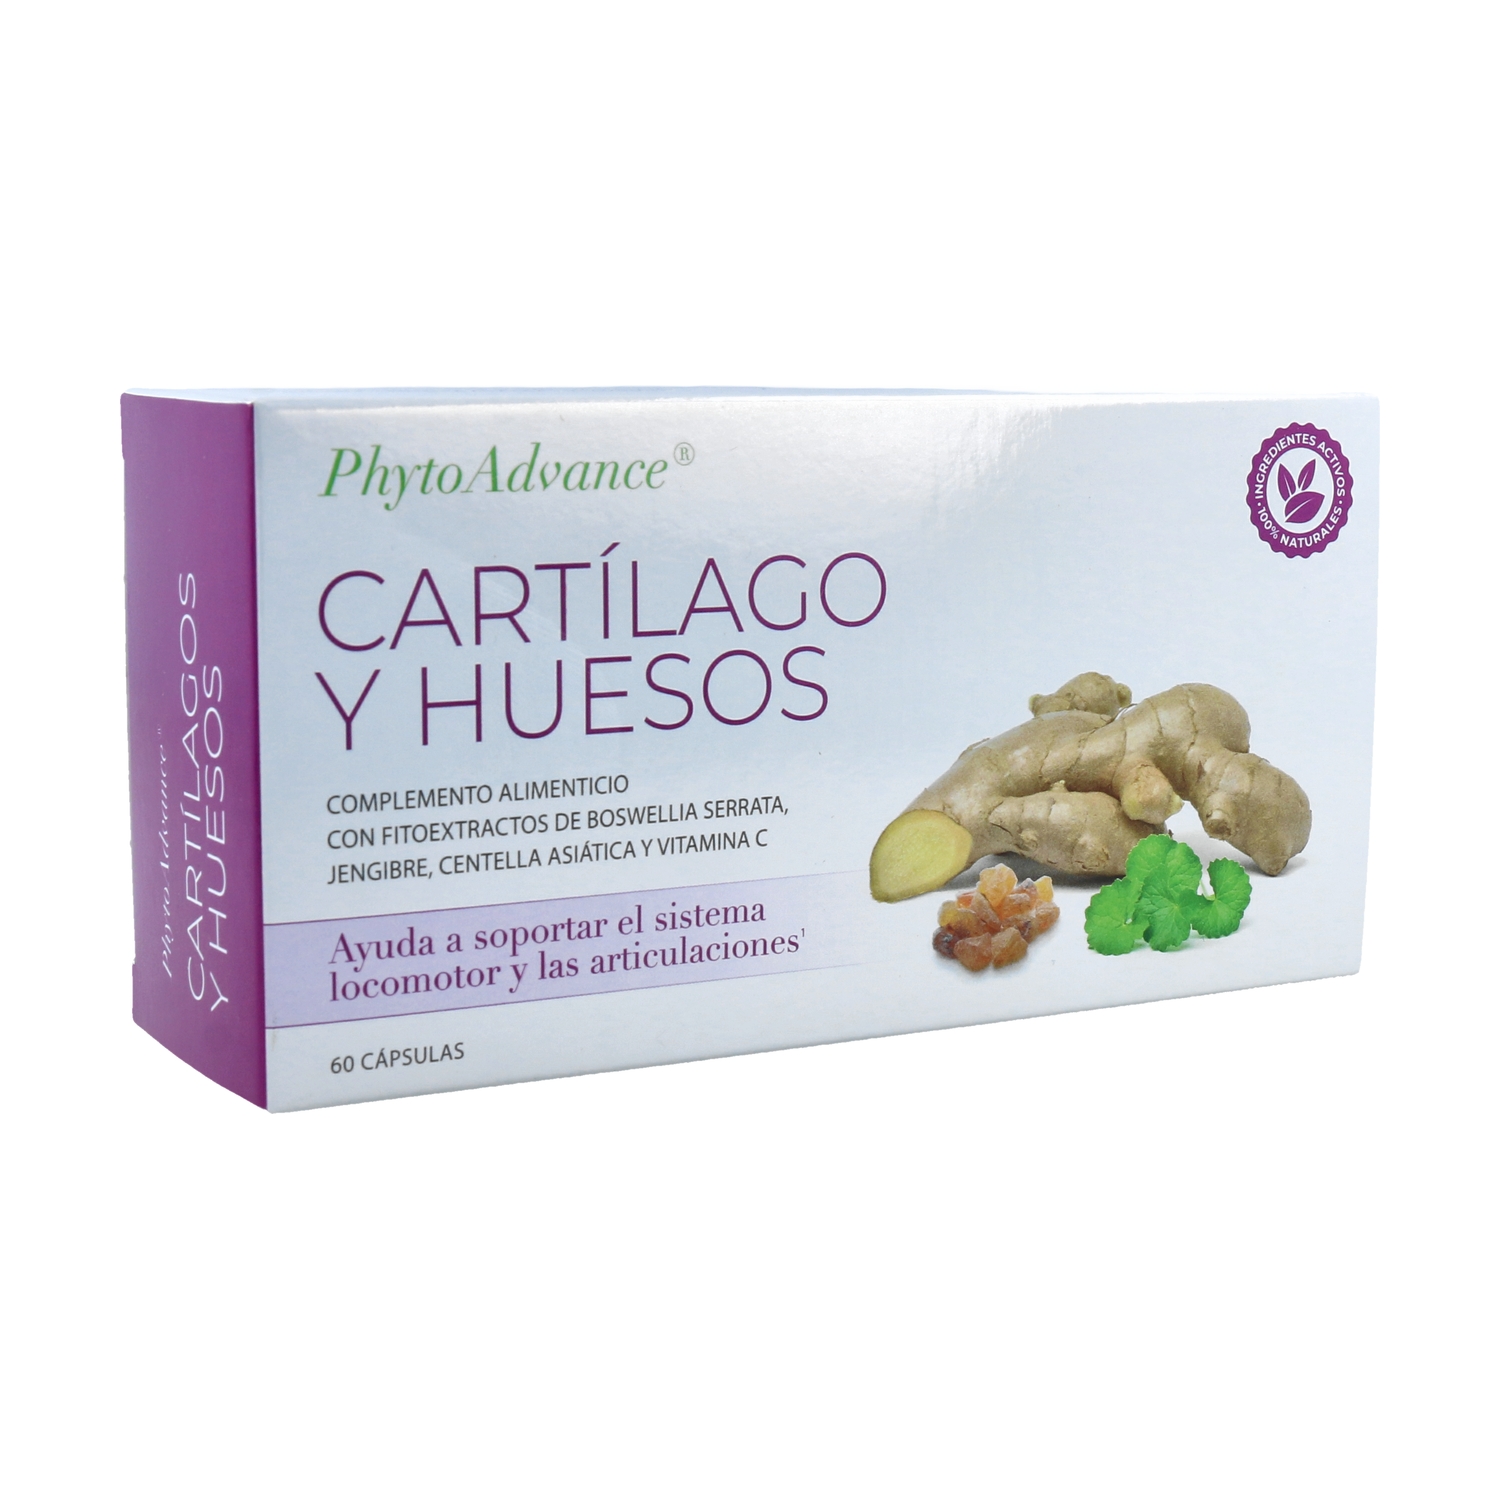 PhytoAdvance CARTLAGO Y HUESOS (60 cpsulas)